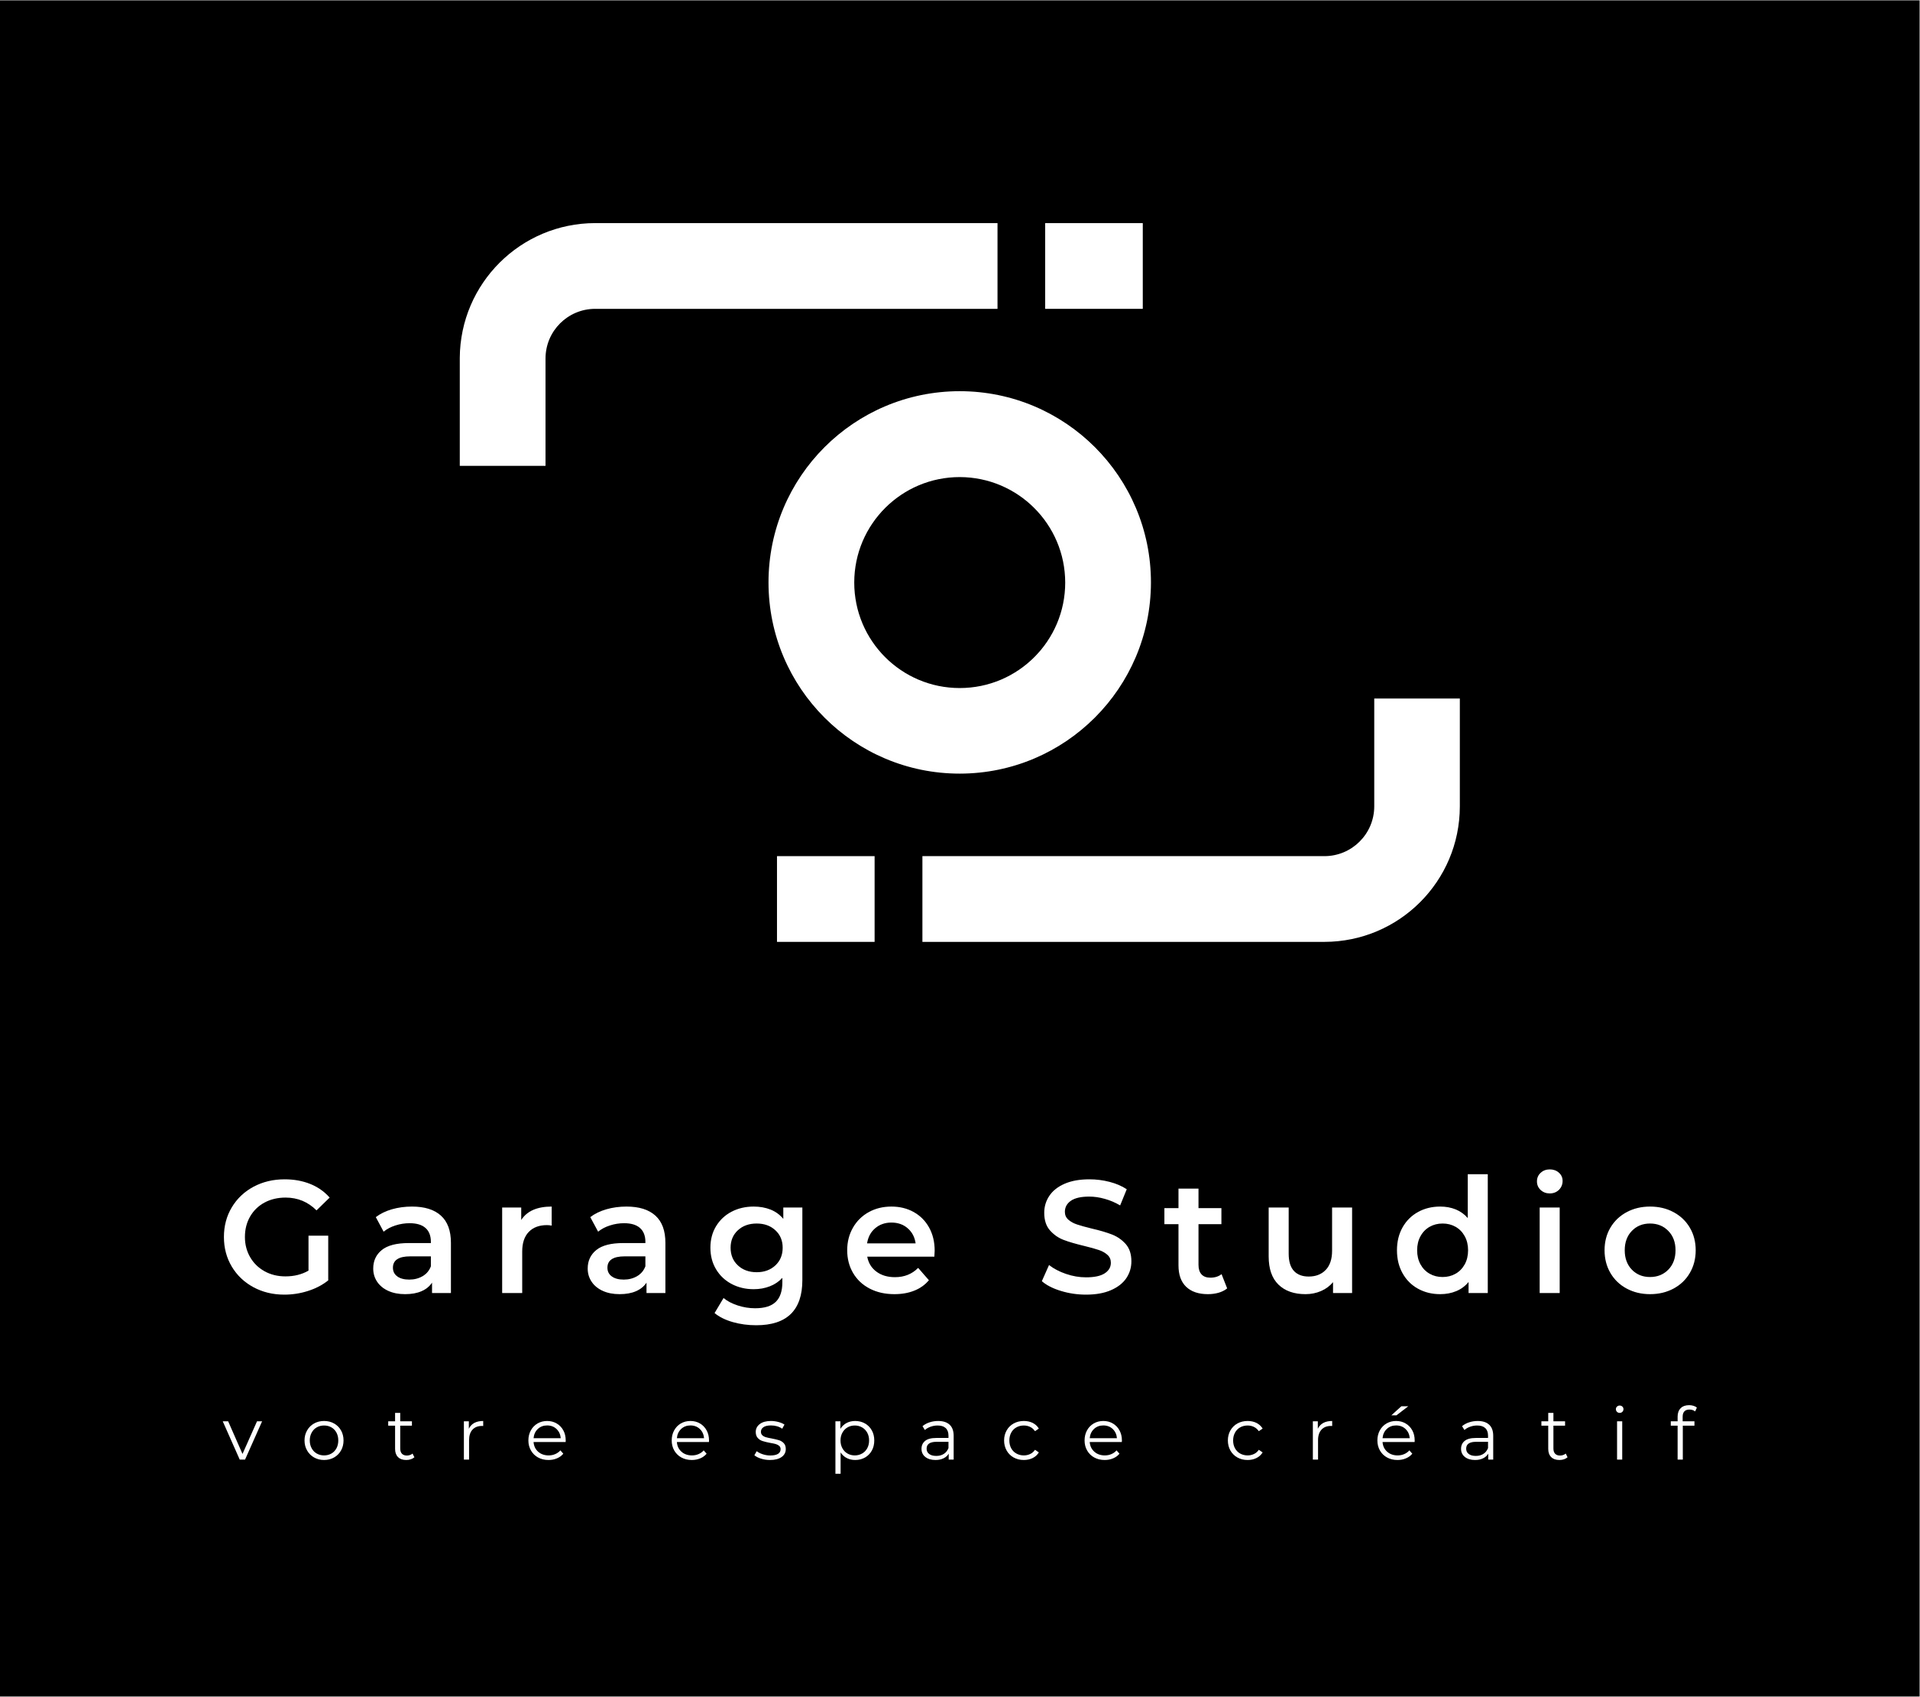 Le logo du garage studio est blanc sur fond noir.